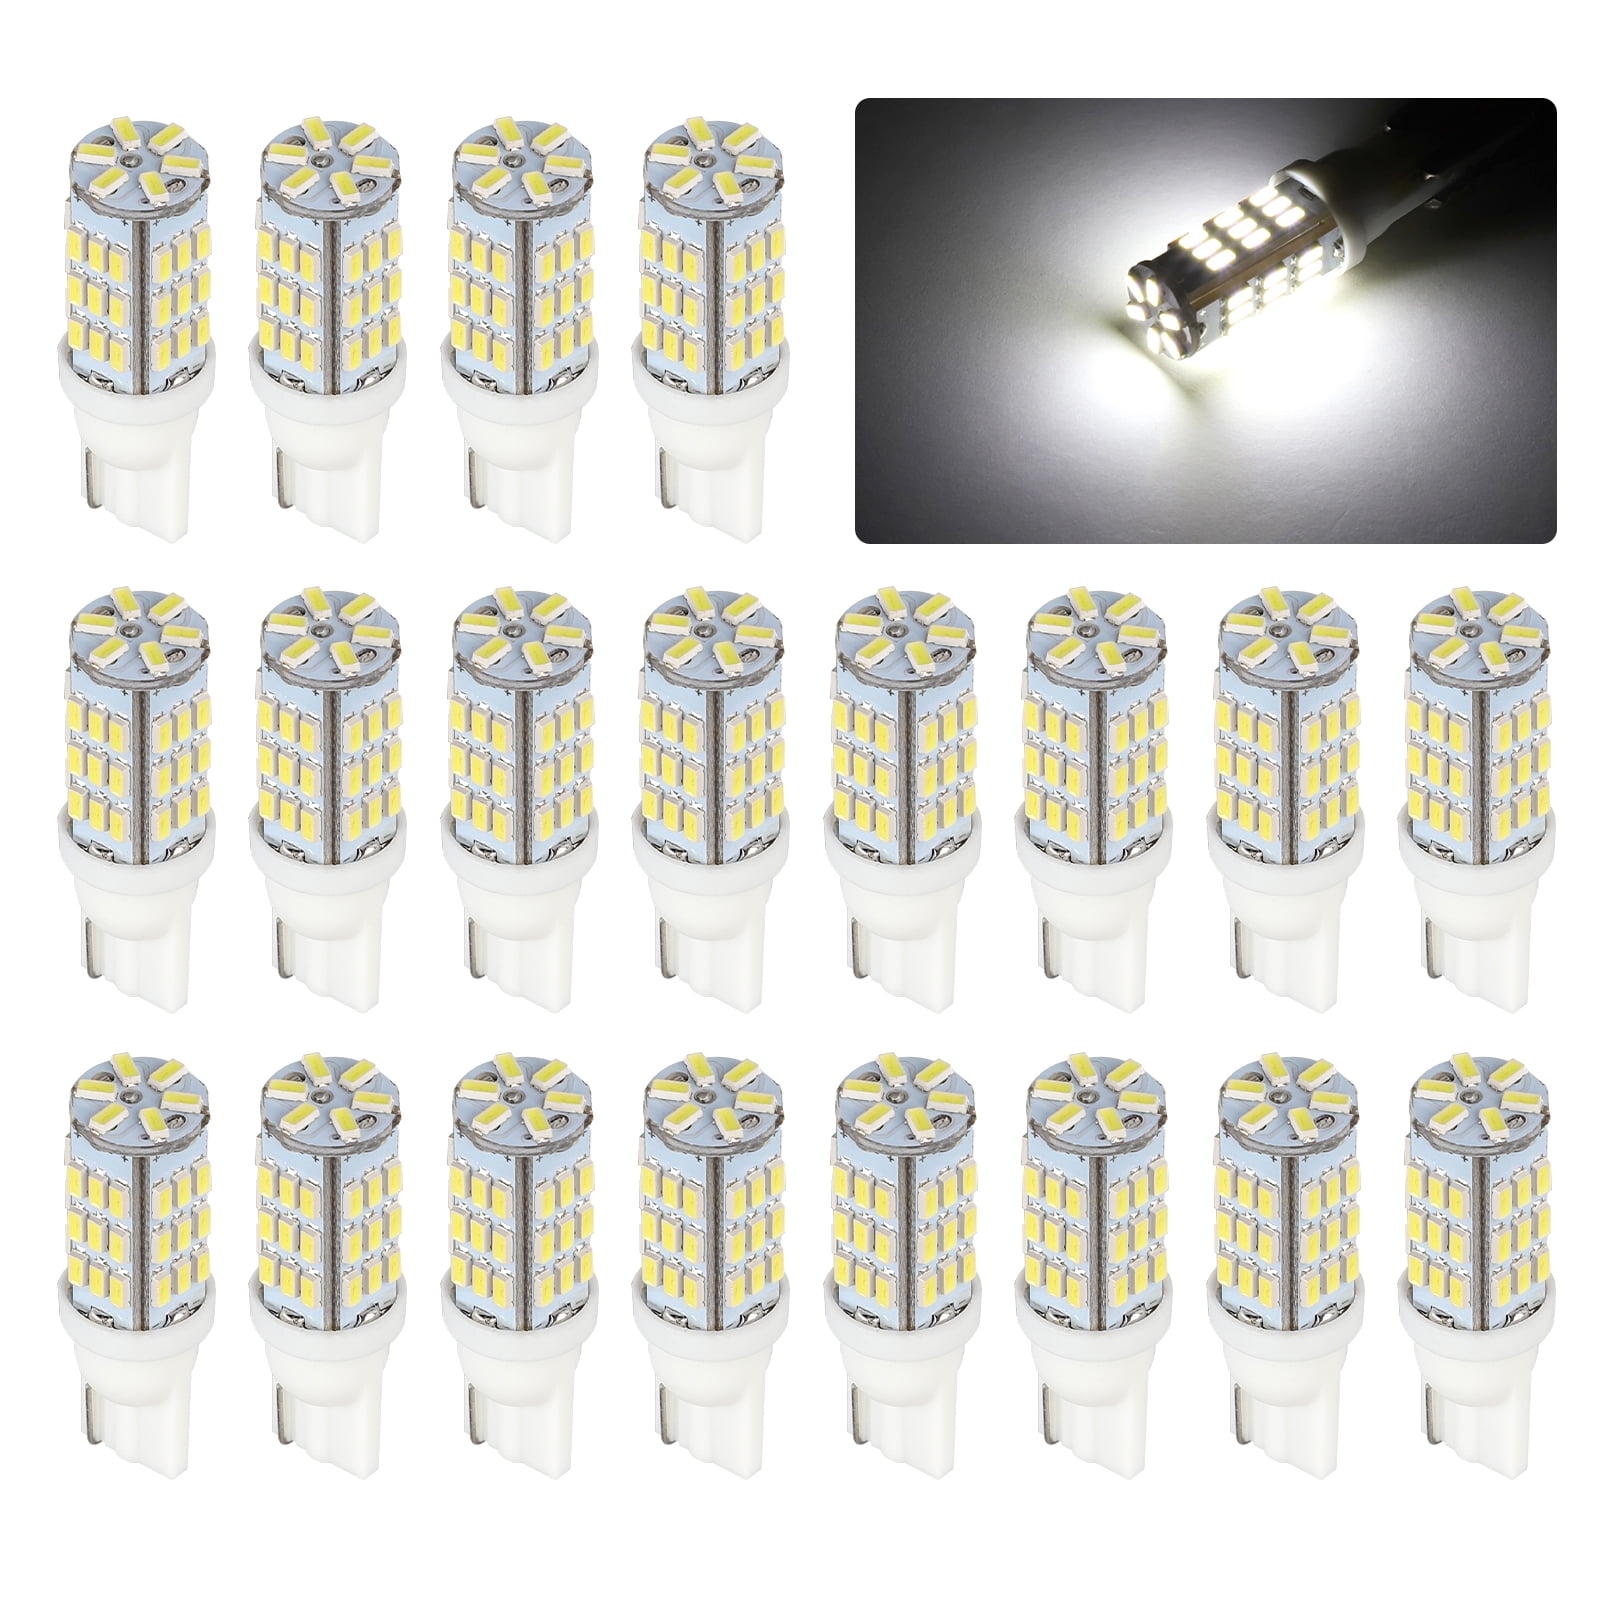 10pcs 20-SMD White LED T10 921 192 Wedge RV Trailer Lamp Interior Car Light Bulb 